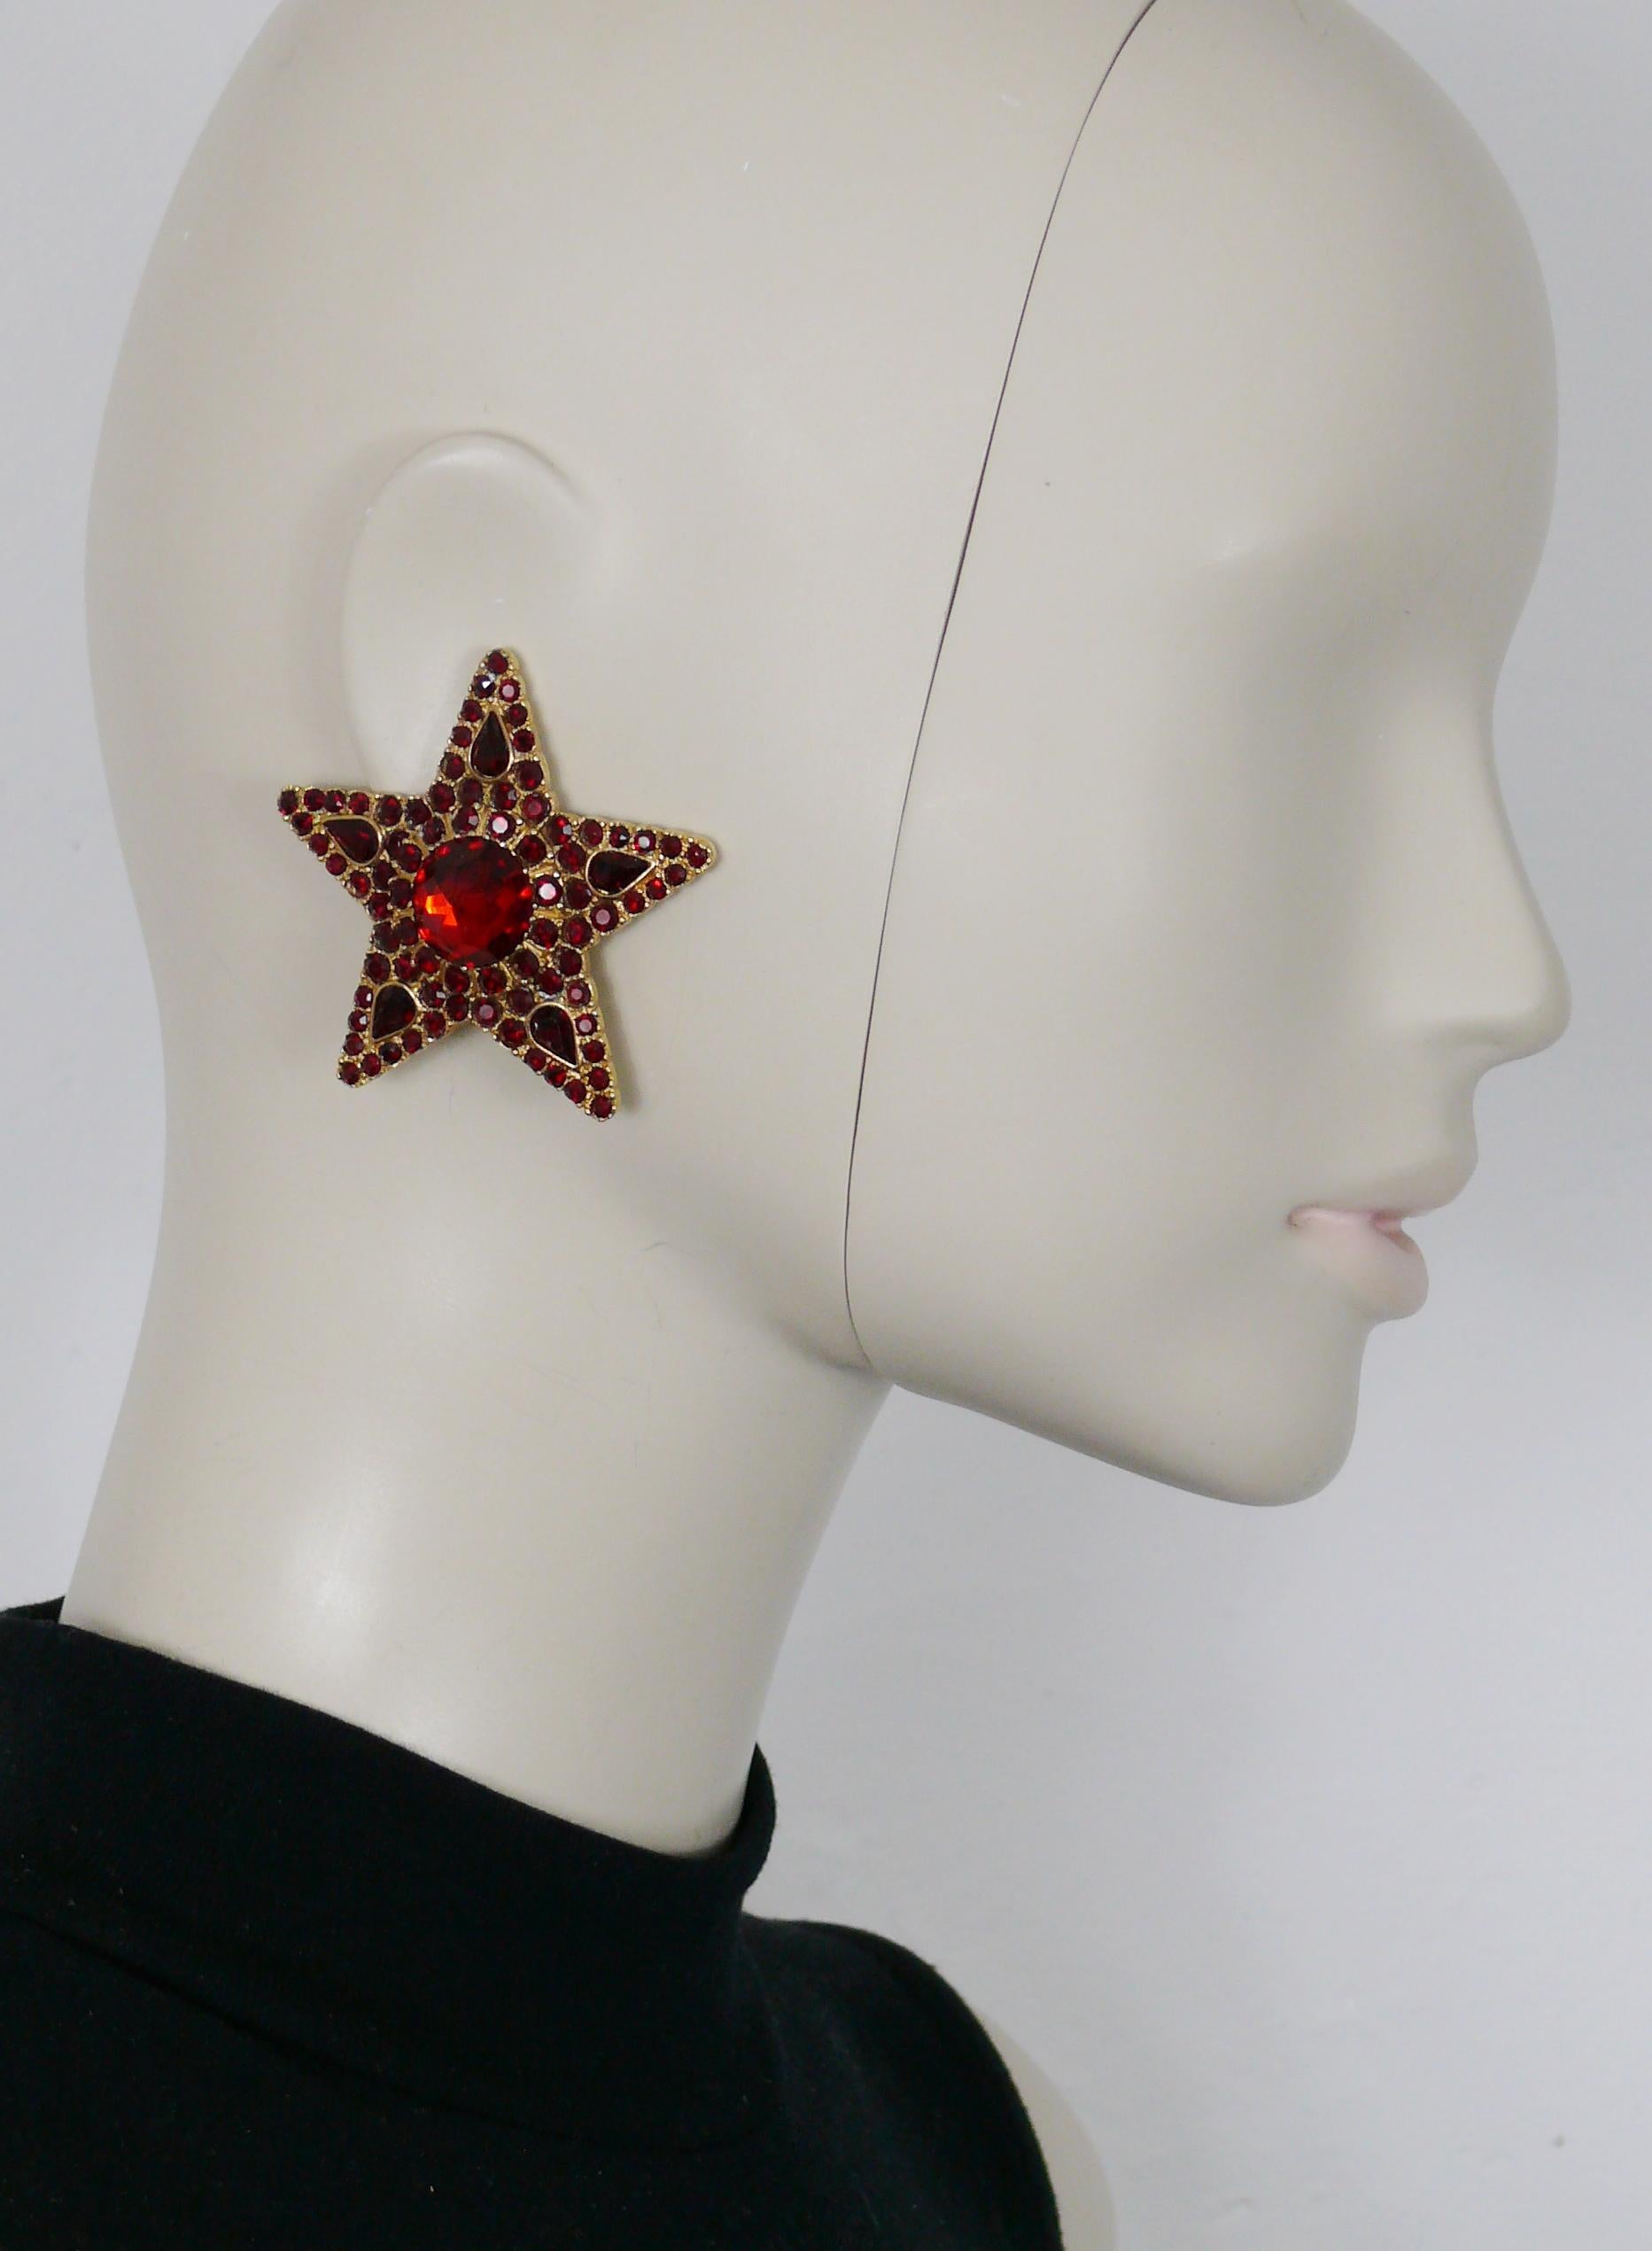 Boucles d'oreilles à clip YVES SAINT LAURENT vintage massif en forme d'étoile dorée, ornées de cristaux de couleur rubis.

Gaufrage YSL Made in France.

Mesures indicatives : environ 5,5 cm x 5,5 cm (2,17 pouces x 2,17 pouces).

Poids : environ 25